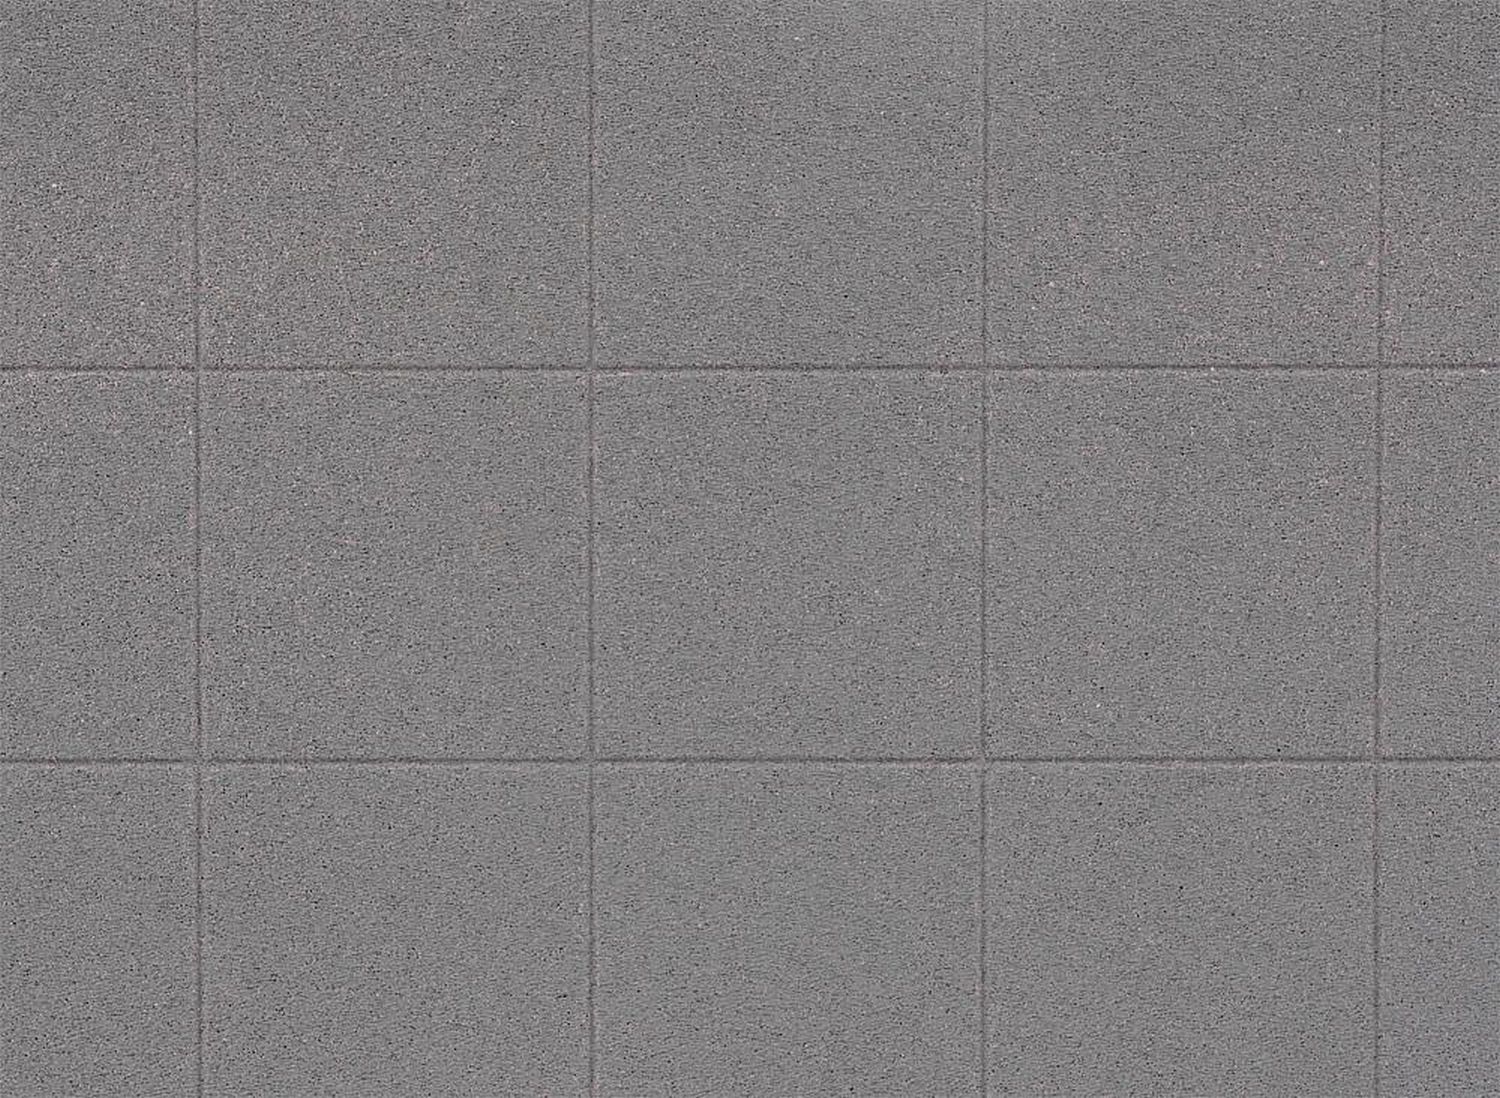 Faller 170808 - Dekorplatte, Bodenplatten, Beton, 2 Stück